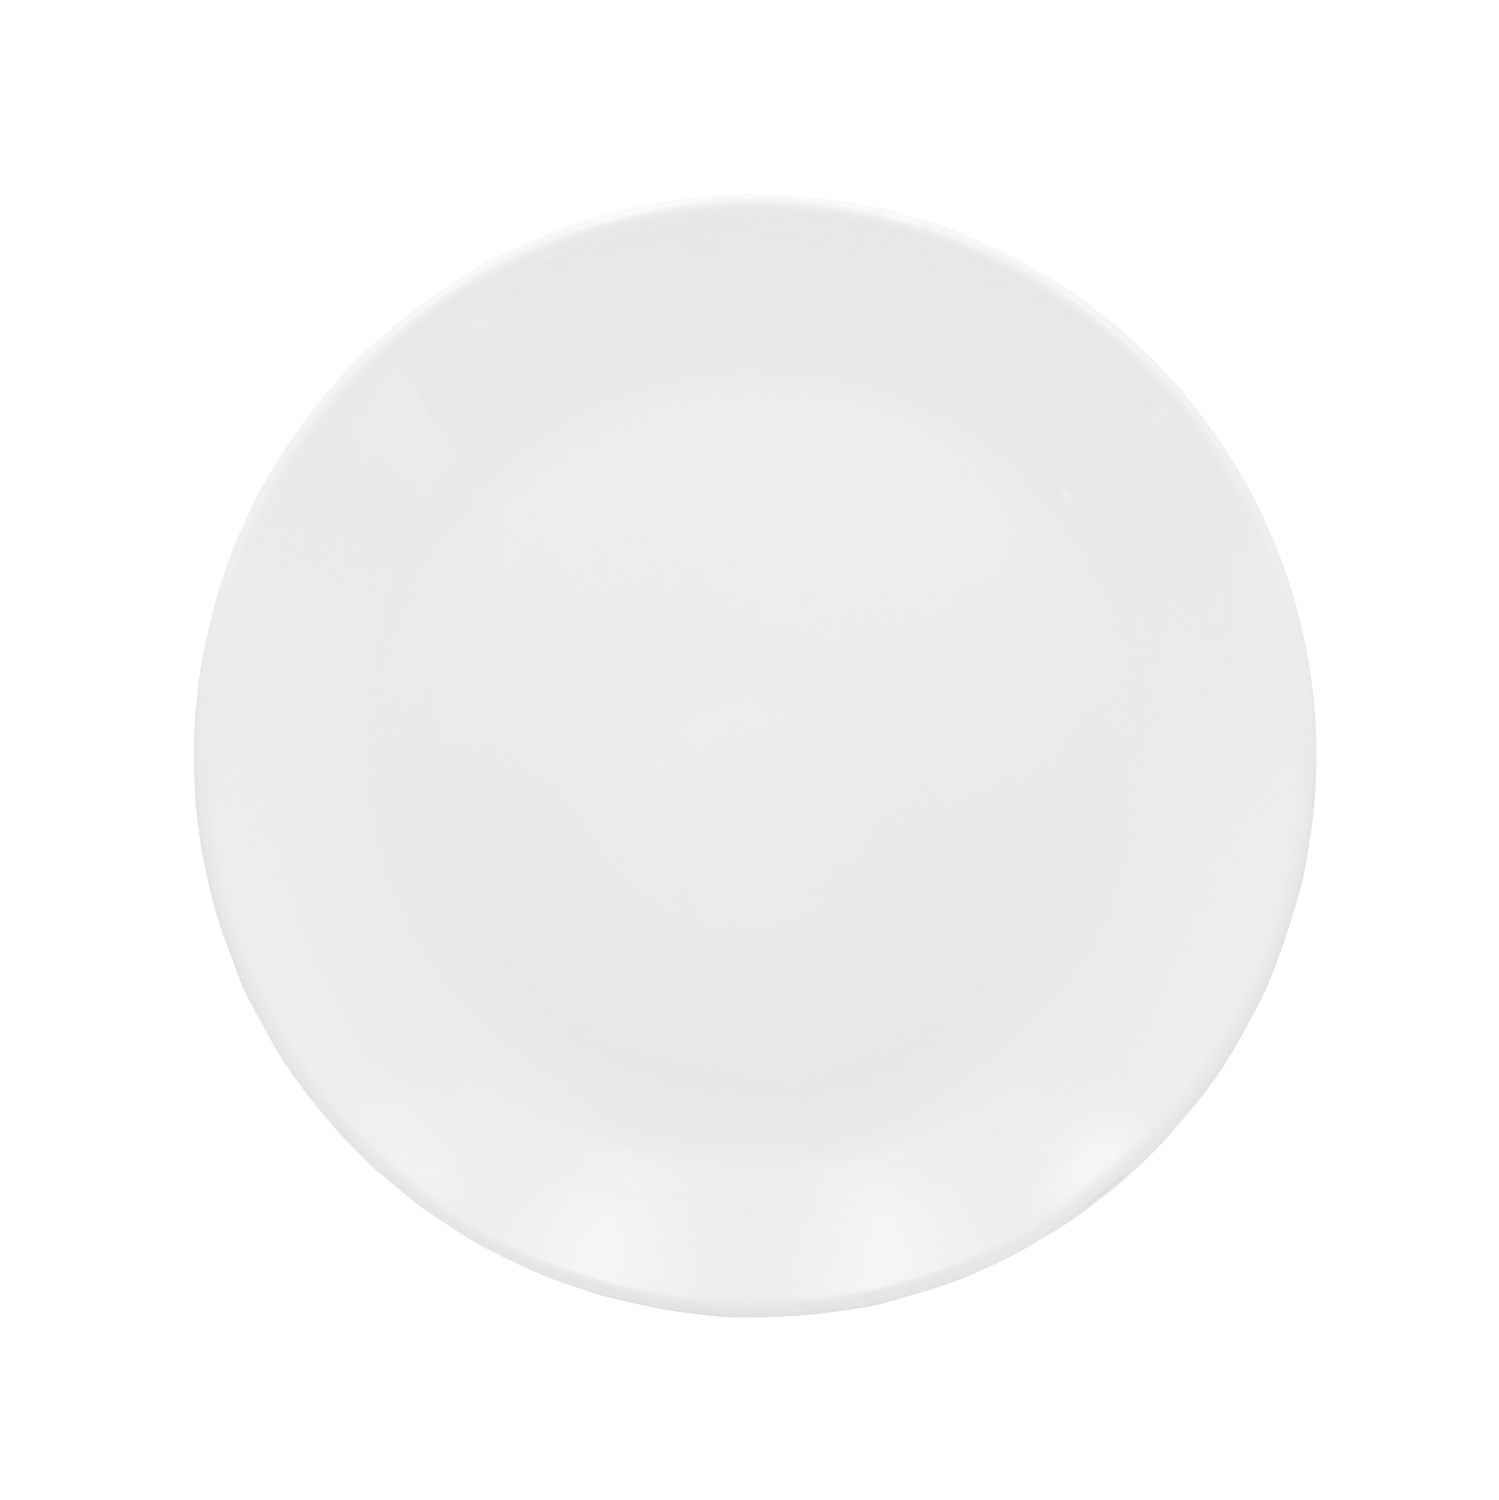 Dinewell Melamine Dinner Plate